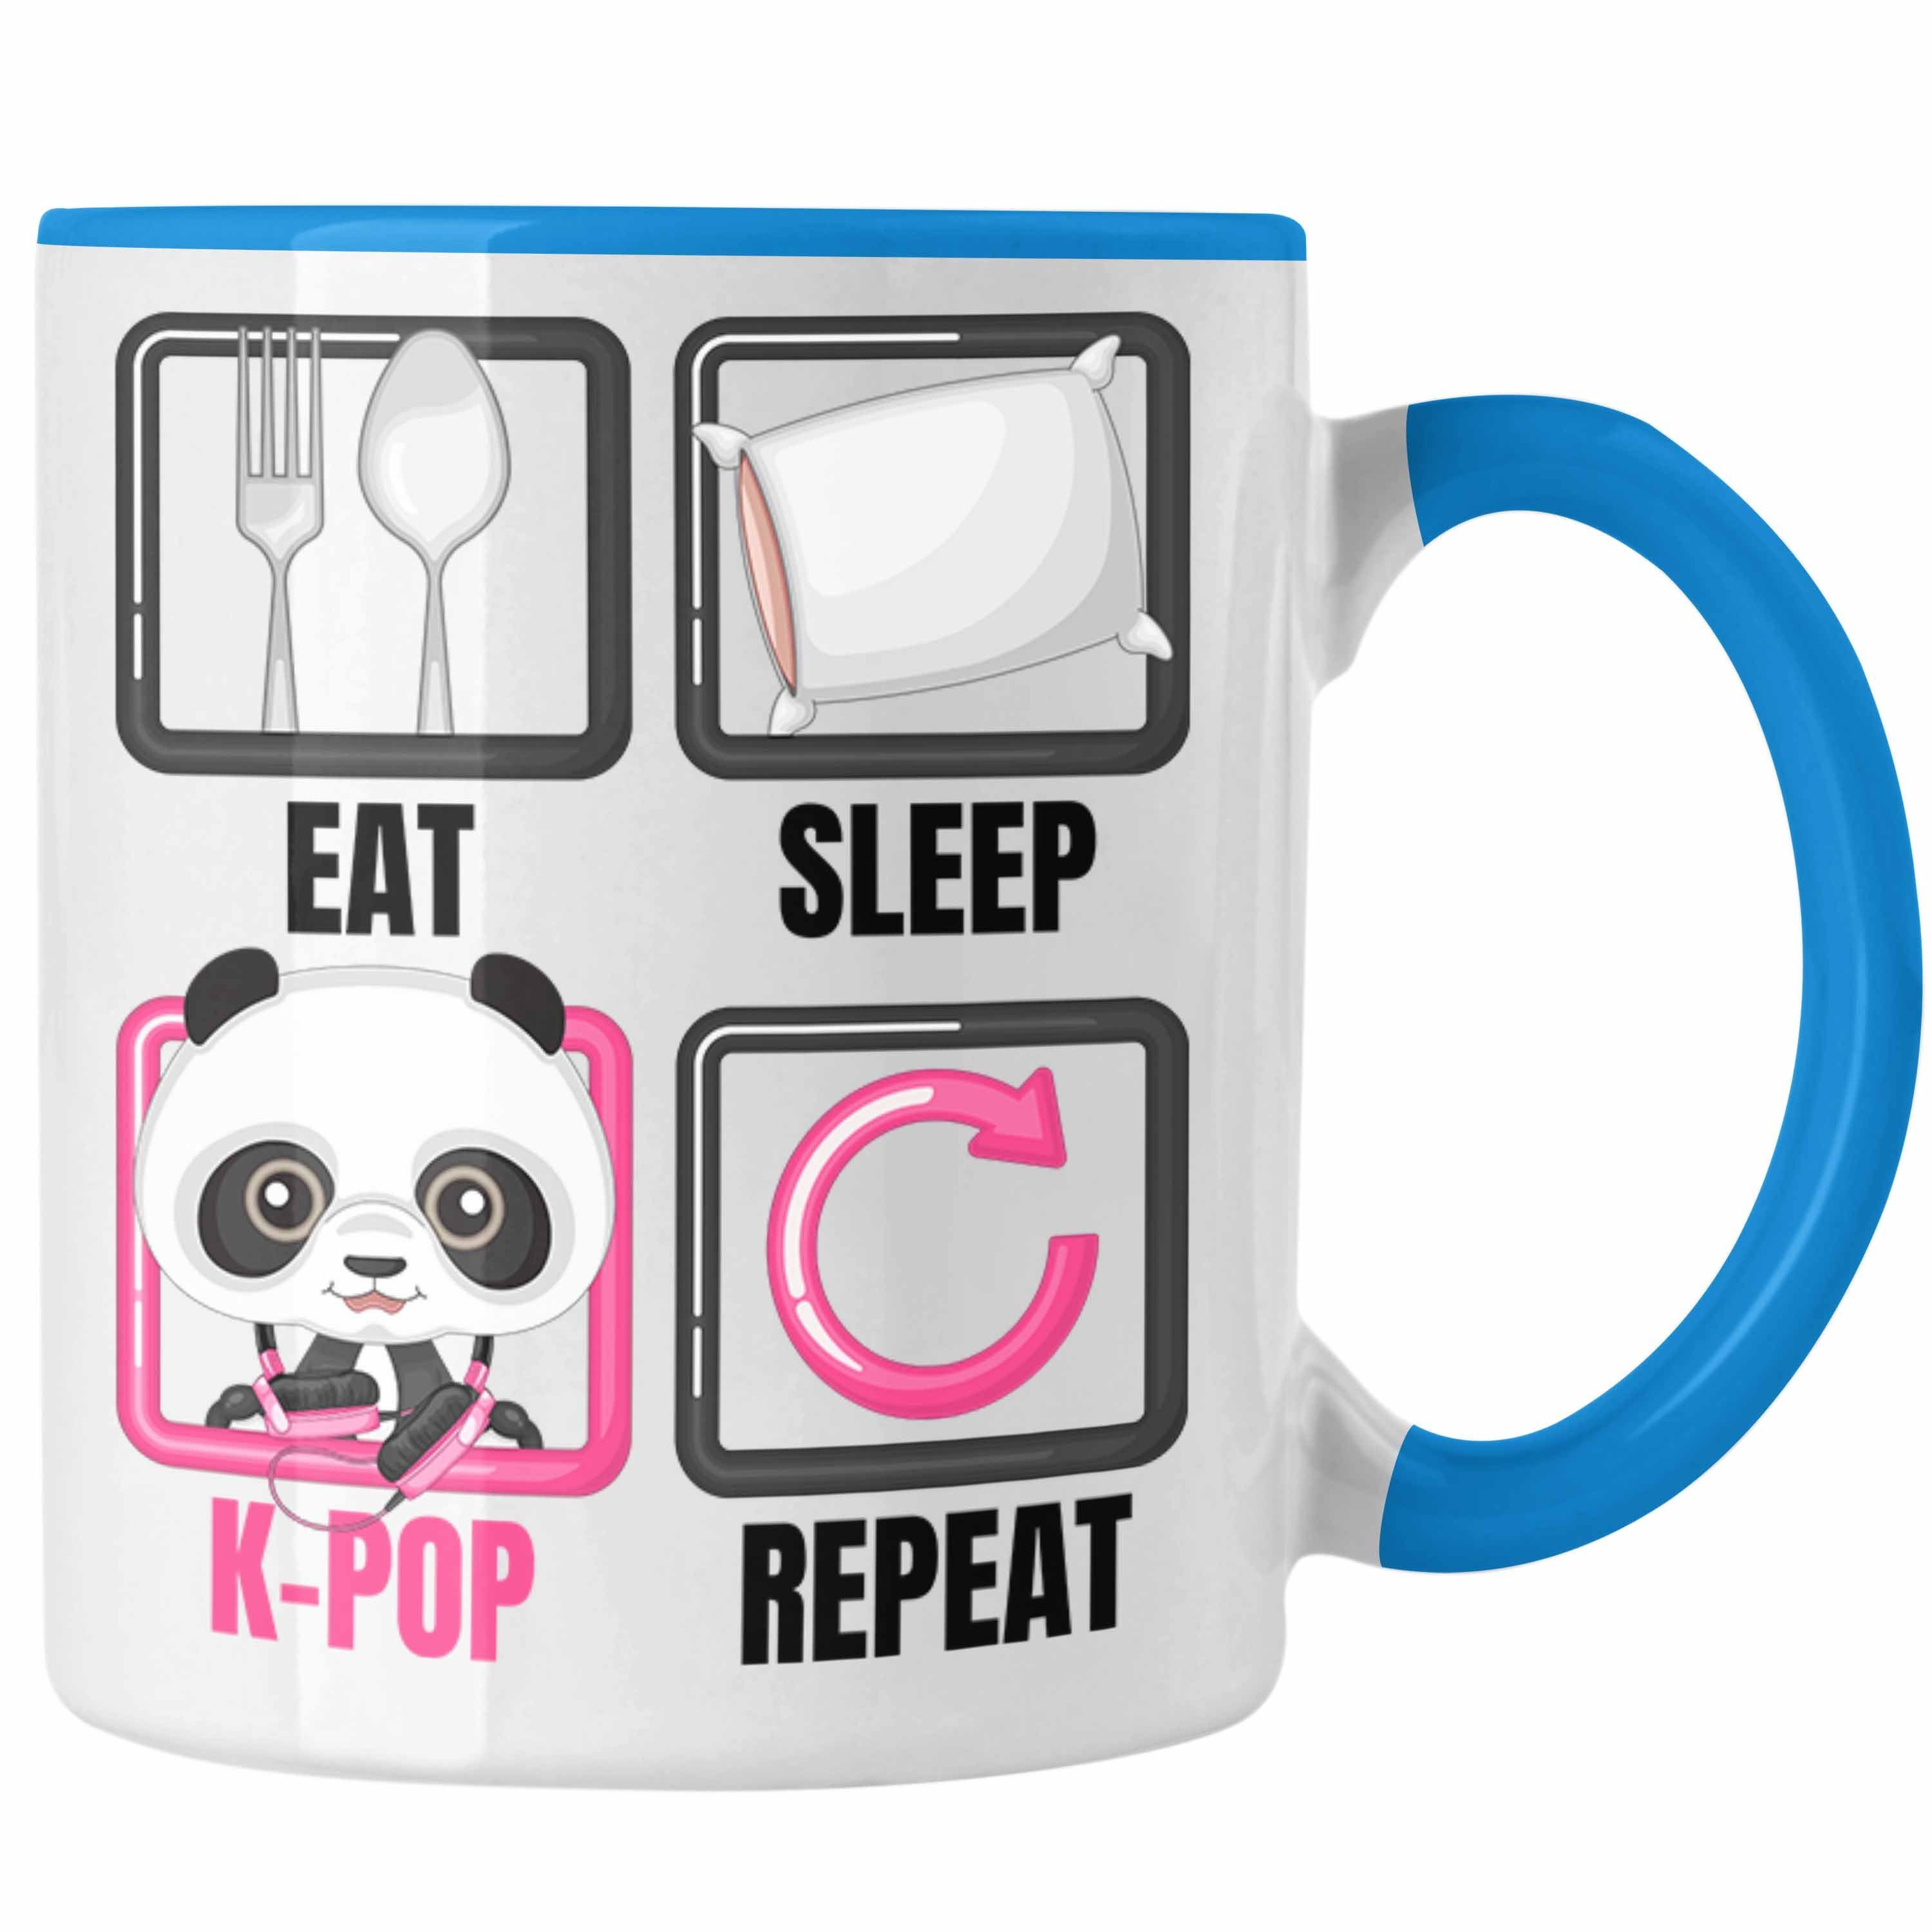 Trendation K-Pop Koreanische Blau Spr Kpop Tasse Geschenkidee Eat Musik Sleep Geschenk Tasse